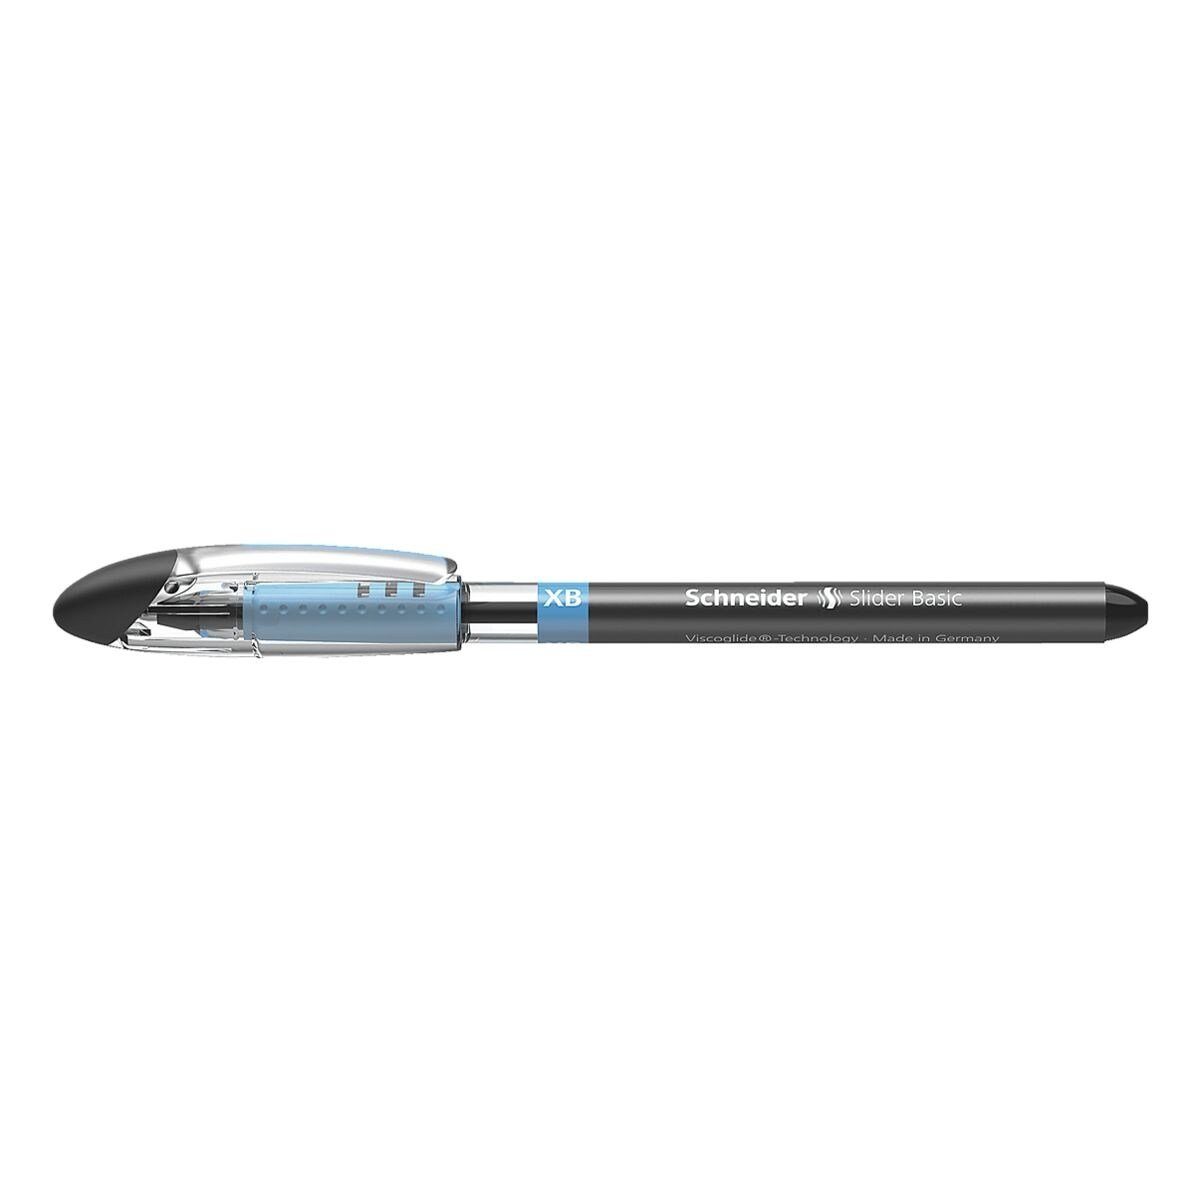 Schneider Kugelschreiber Slider XB 1512, mit Kappe, Strichbreite: 0,7 mm (XB) schwarz | Kugelschreiber